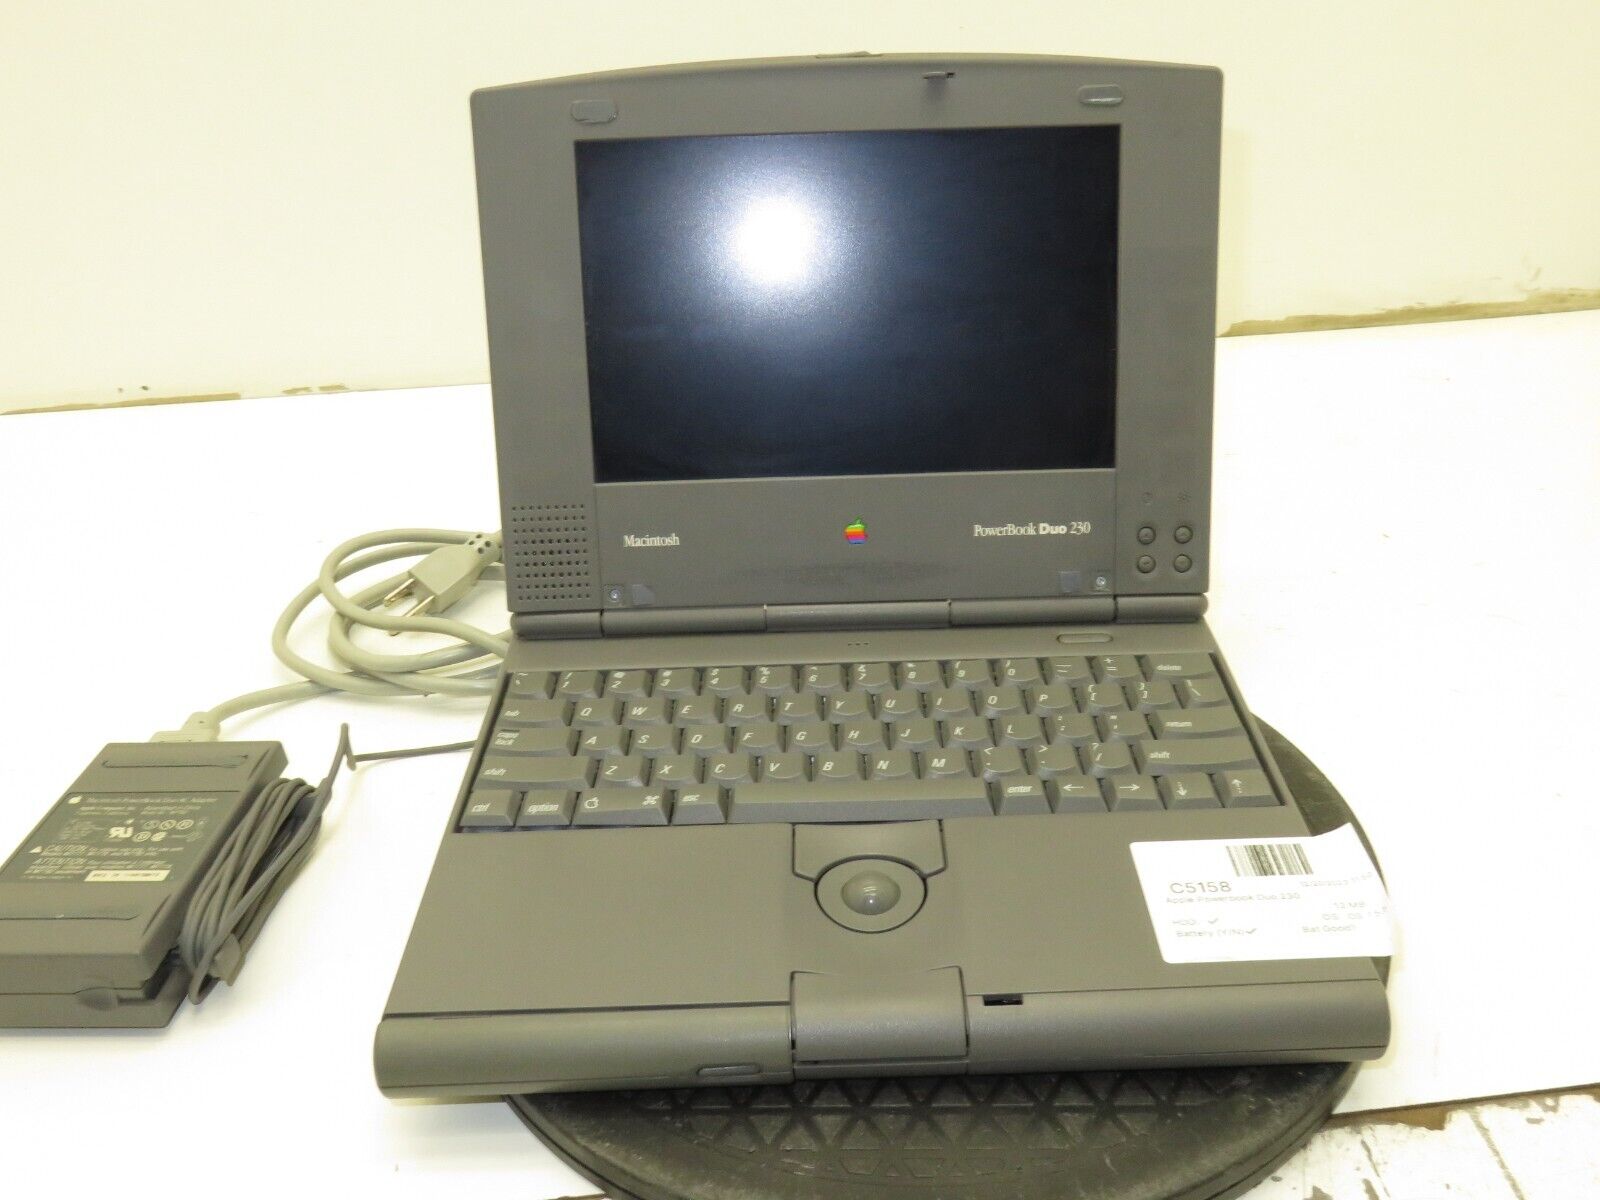 Apple PowerBook Duo 230 M7777 Motorola 68030 33MHz 12MB Ram 80MB OS 7.5.3 NoBat